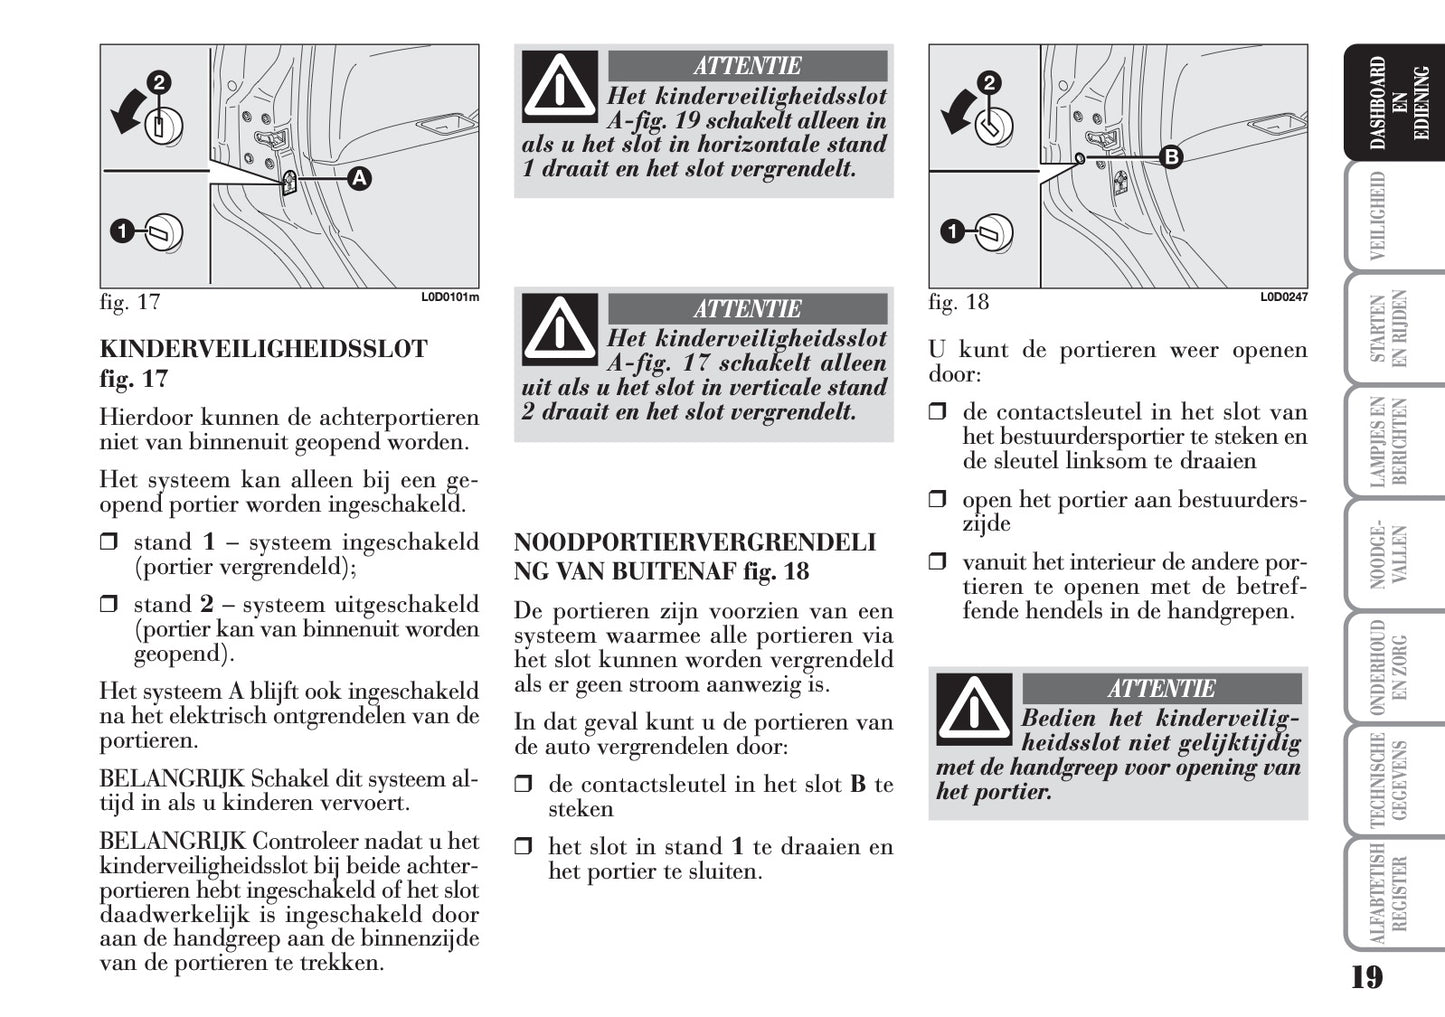 2004-2012 Lancia Musa Owner's Manual | Dutch